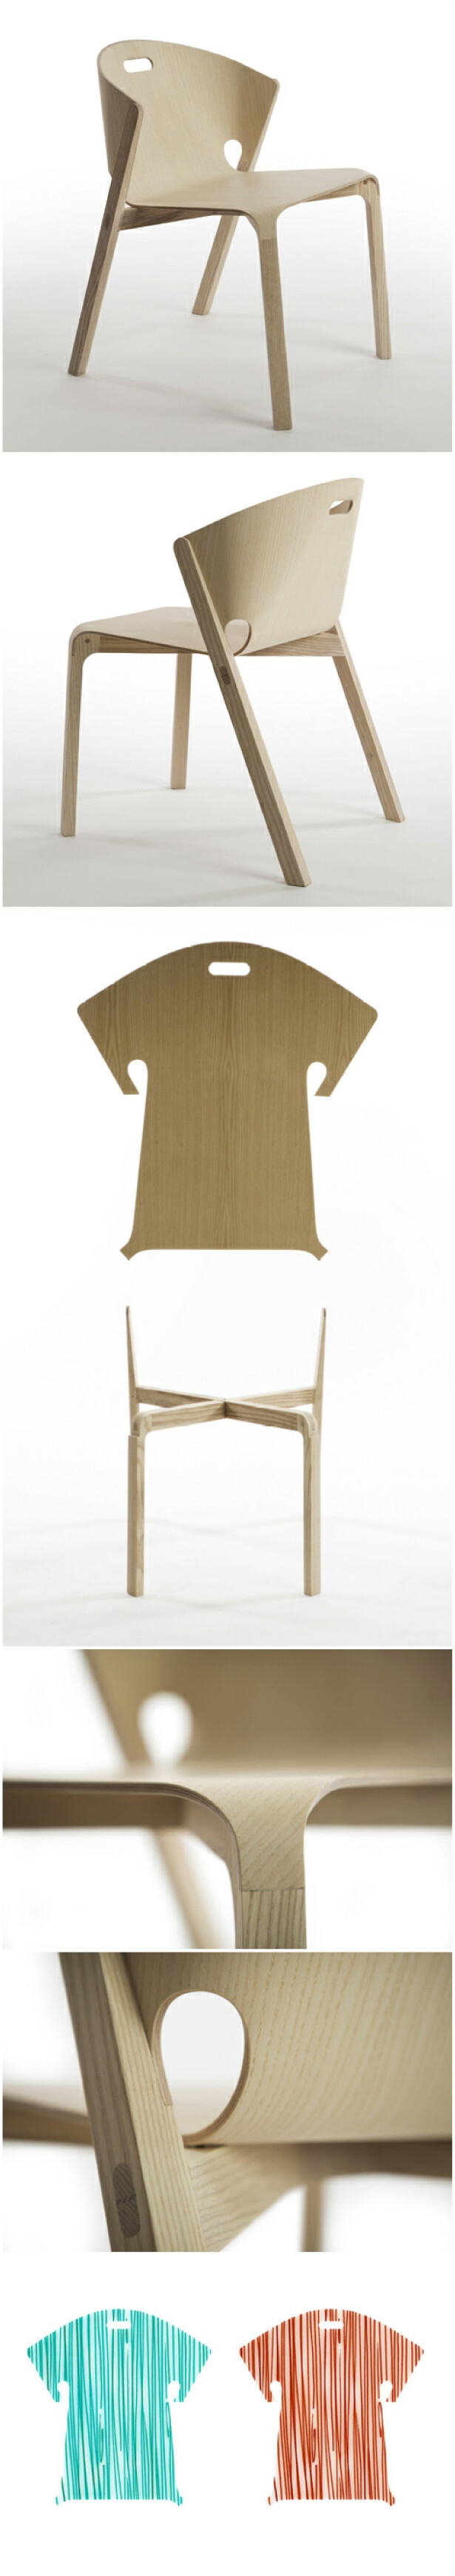 英国工业设计师Benjamin Hubert联合葡萄牙厂商De La Espada设计了一把造型独特的椅子，该椅子由一个T恤形状的靠背和一个实木框架组成。胶合板靠背边缘的凸出部分正好插入到白蜡木实木椅腿的凹槽里面，形成平滑的表面。设计师称这把椅子的重点在于把胶合板和实木整合在一起，在一般情况下，两者总是处于分离状态。